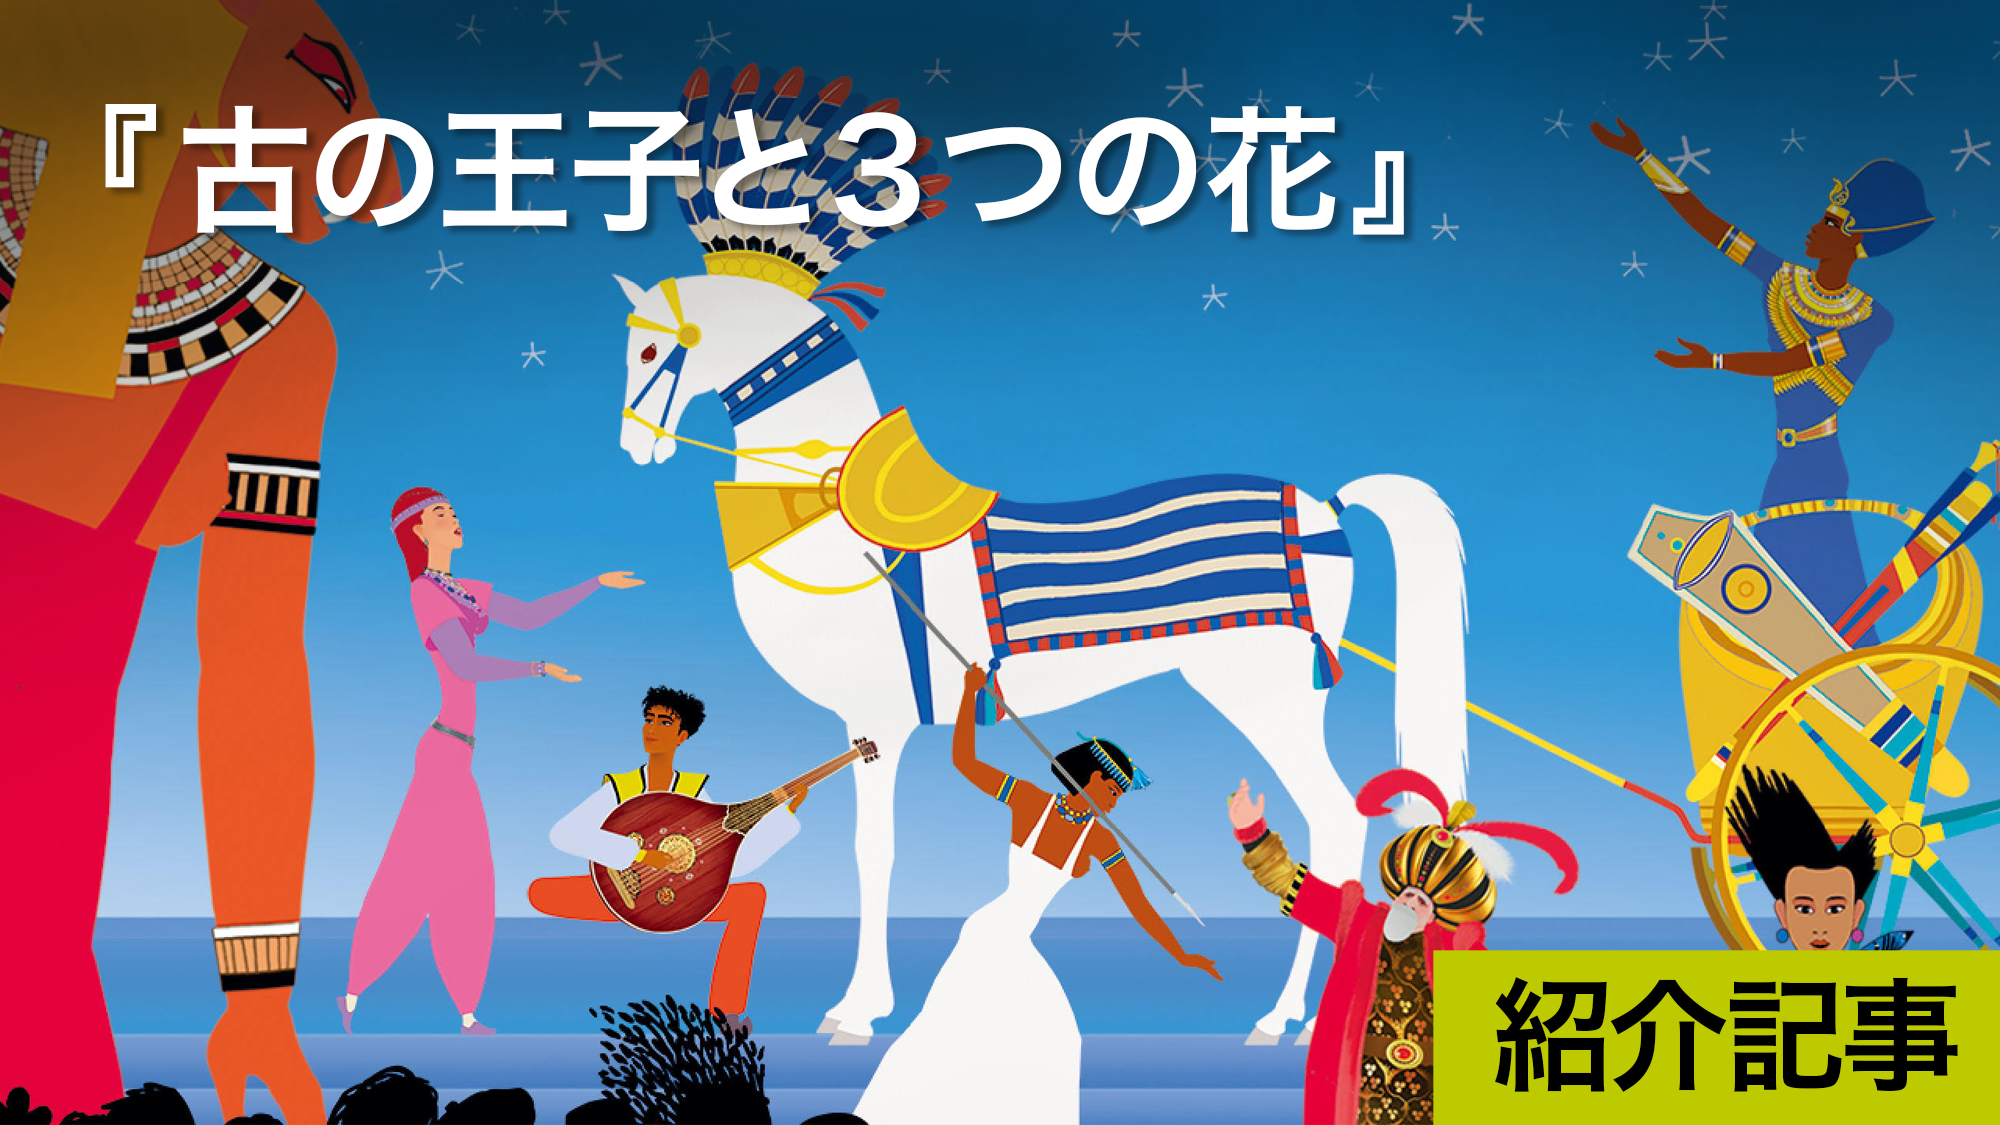 『古の王子と３つの花』かつて「スタジオジブリ洋画第1回提供作品」として日本で紹介されたミッシェル・オスロ監督の新作